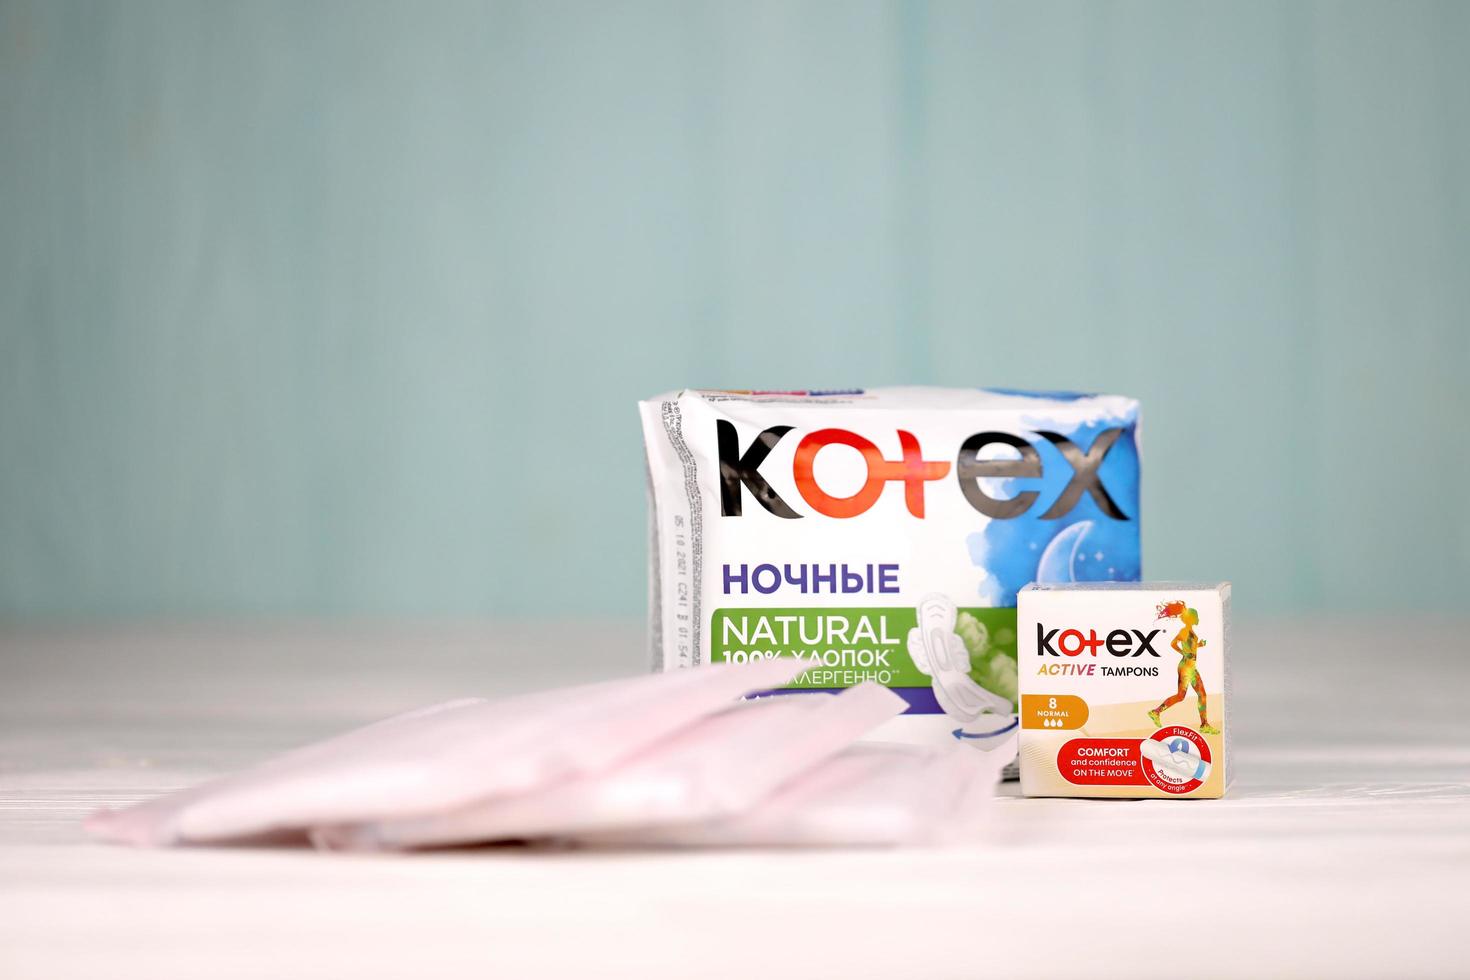 ternopil, ukraina - april 24, 2022 kotex produktion med logotyp. kotex är en varumärke av feminin hygien Produkter, inkluderar maxi, tunn och ultra tunn dynor. foto